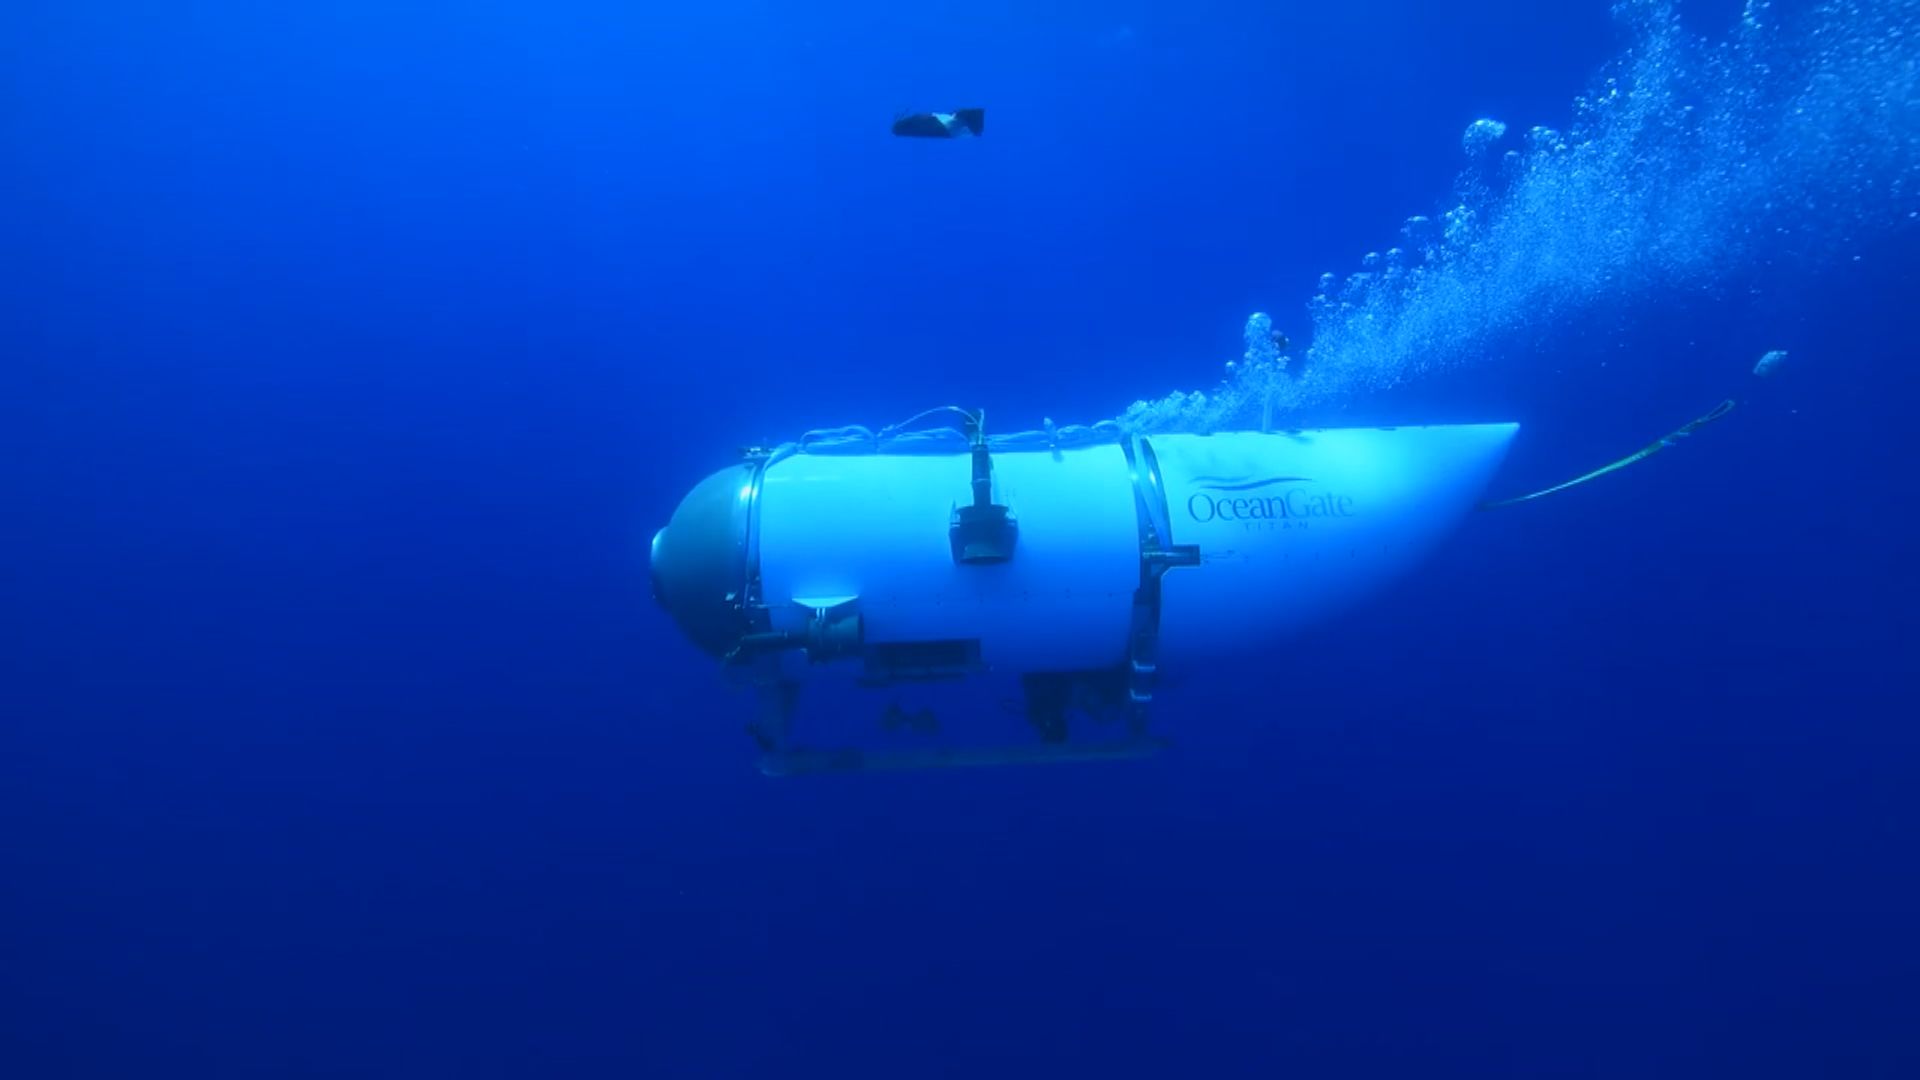 加拿大就潛水器泰坦內爆解體展開調查 專家指或跟設計不良有關